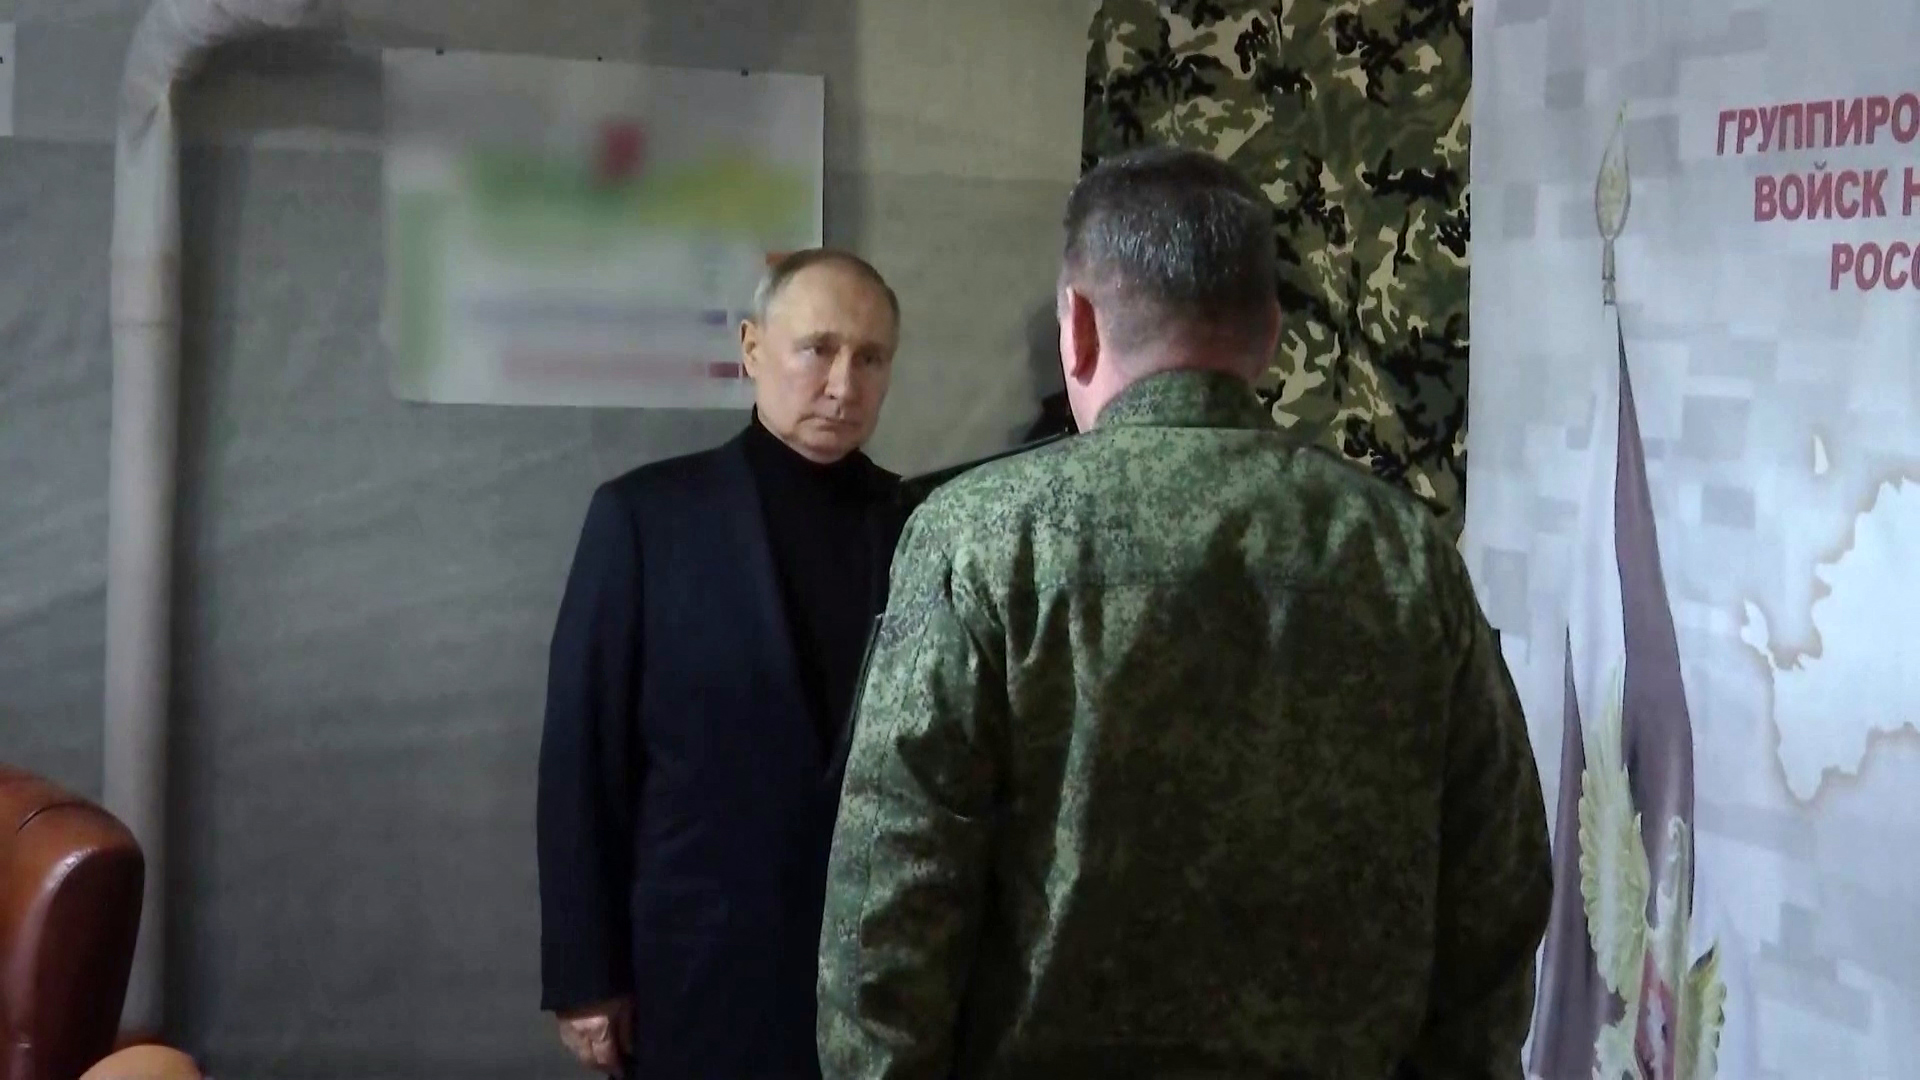 Ουκρανία: Ο Πούτιν επισκέφθηκε τον τόπο των «εγκλημάτων» του – Αντιδρά το Κίεβο στην επίσκεψη του Ρώσου προέδρου